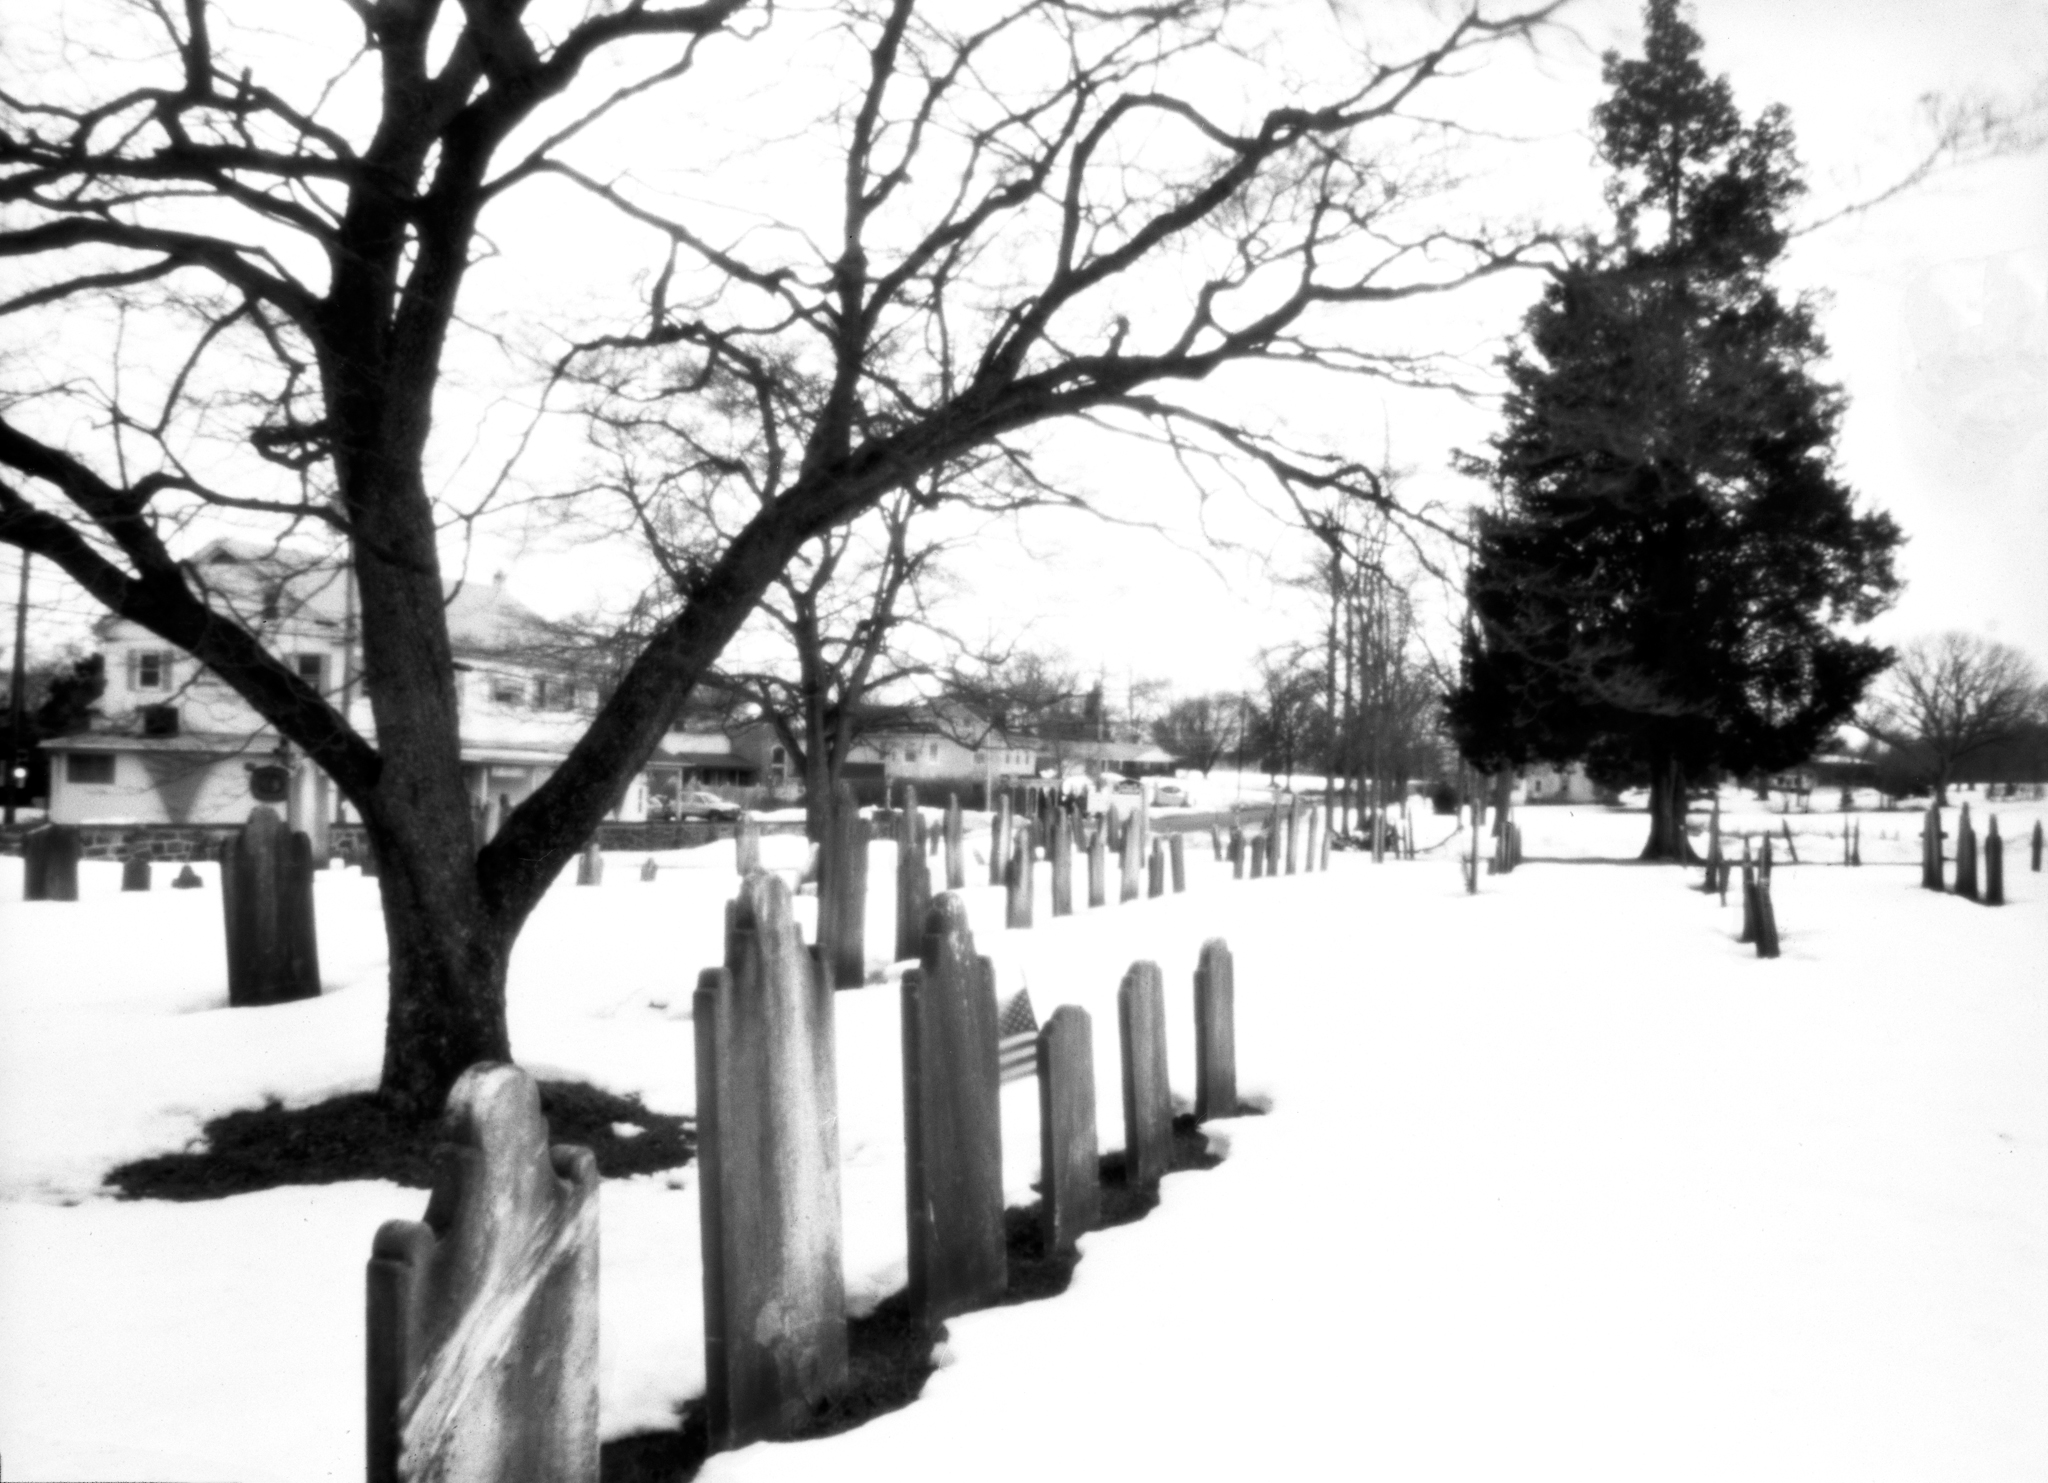  St Paul's UCC Cemetery.&nbsp;Amity Pennsylvania.&nbsp;&nbsp;Rob Kauzlarich built 90mm 4x5. 